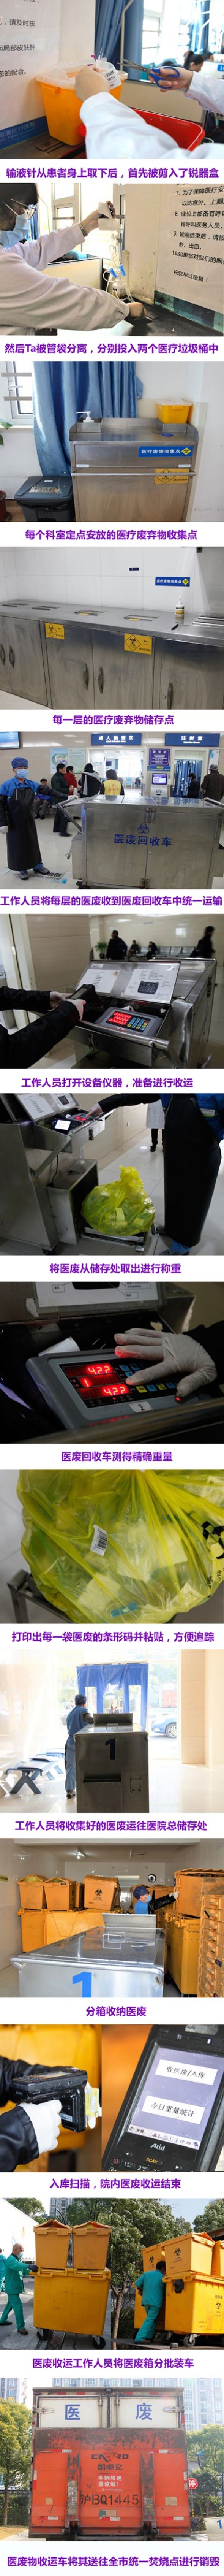 图解闵行的医疗废弃物收运全过程